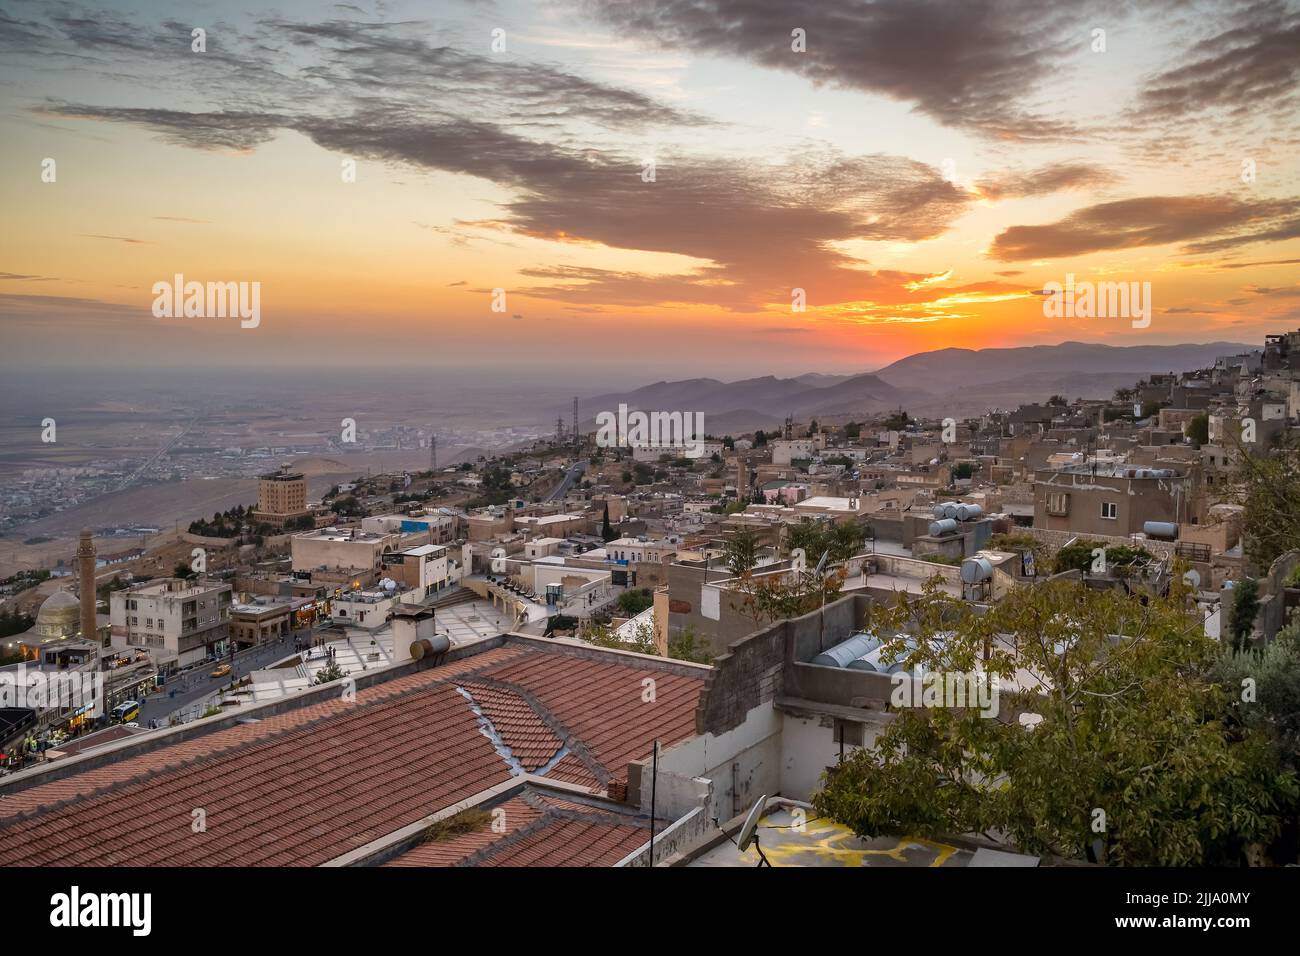 Mardin cityscape at sunset, Turkey. Stock Photo